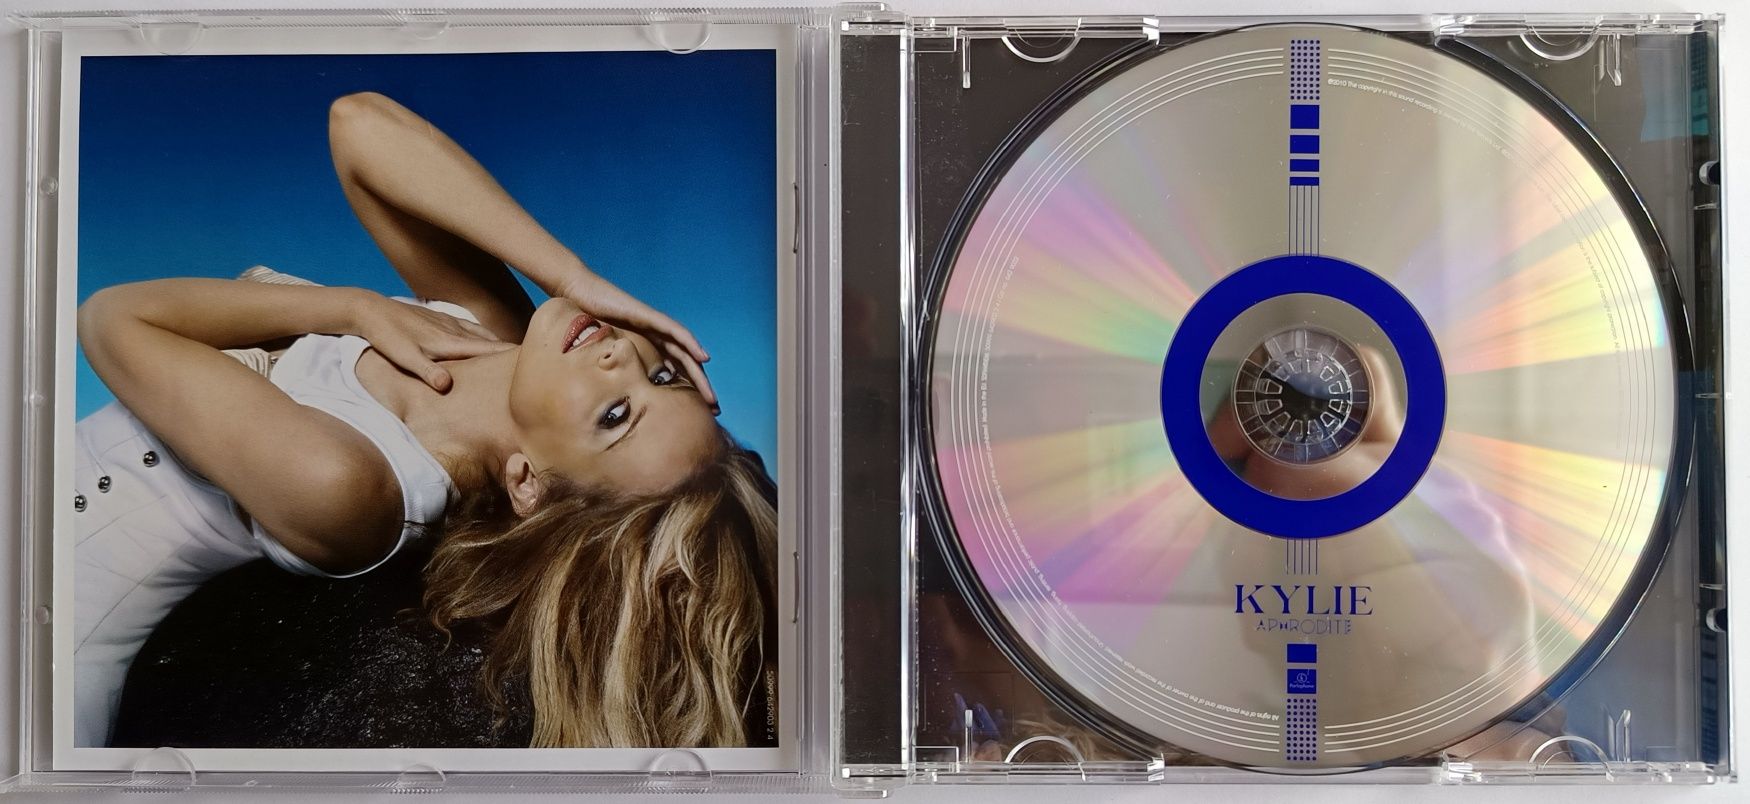 Kylie Minogue Aphrodite 2010r I Wydanie